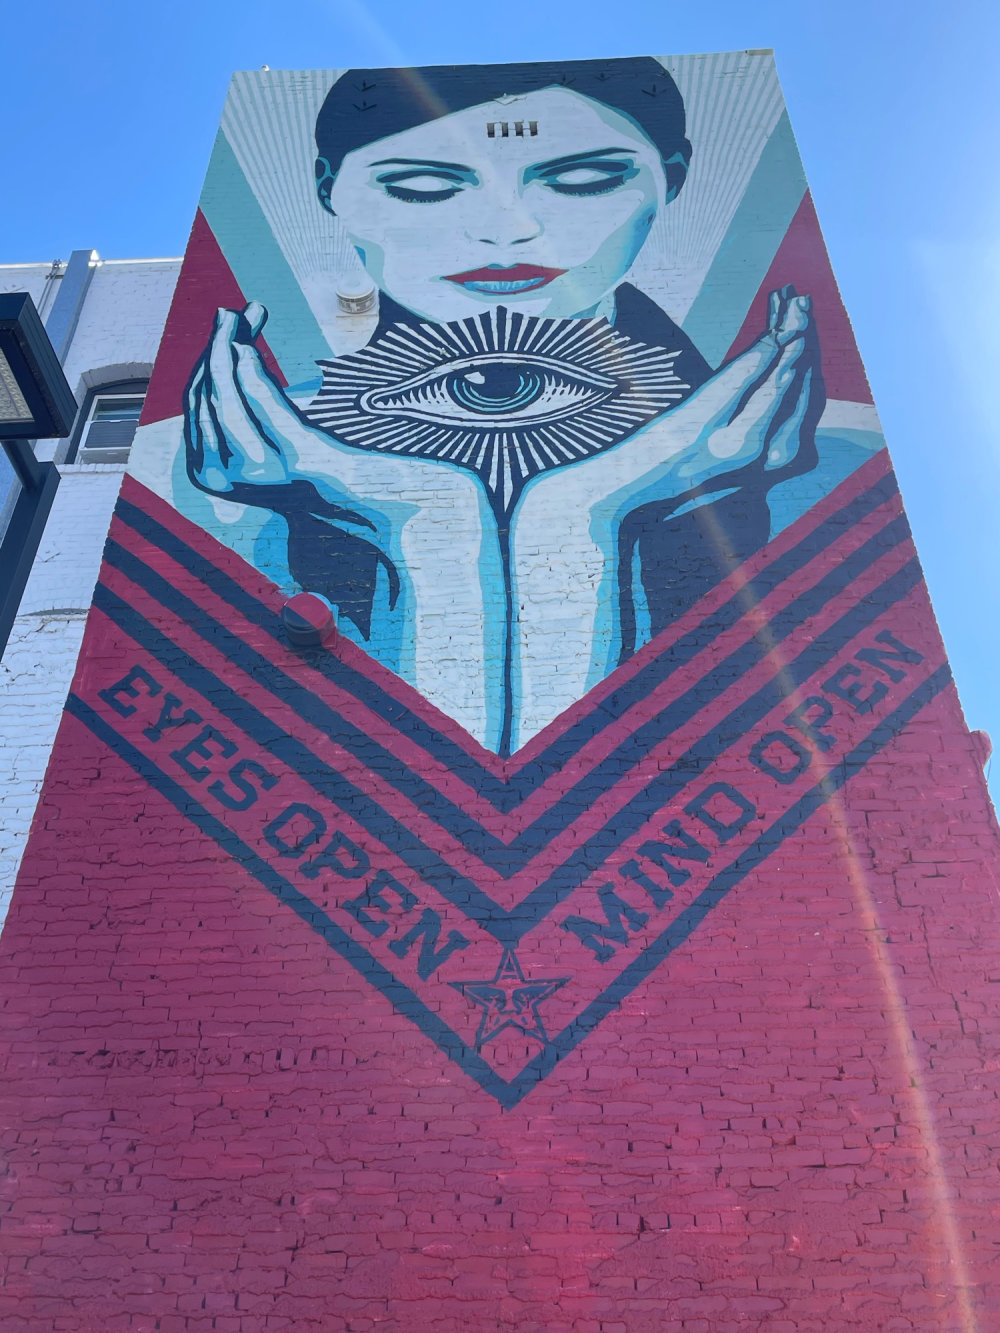 mural in Los Angeles by artist Shepard Fairey.